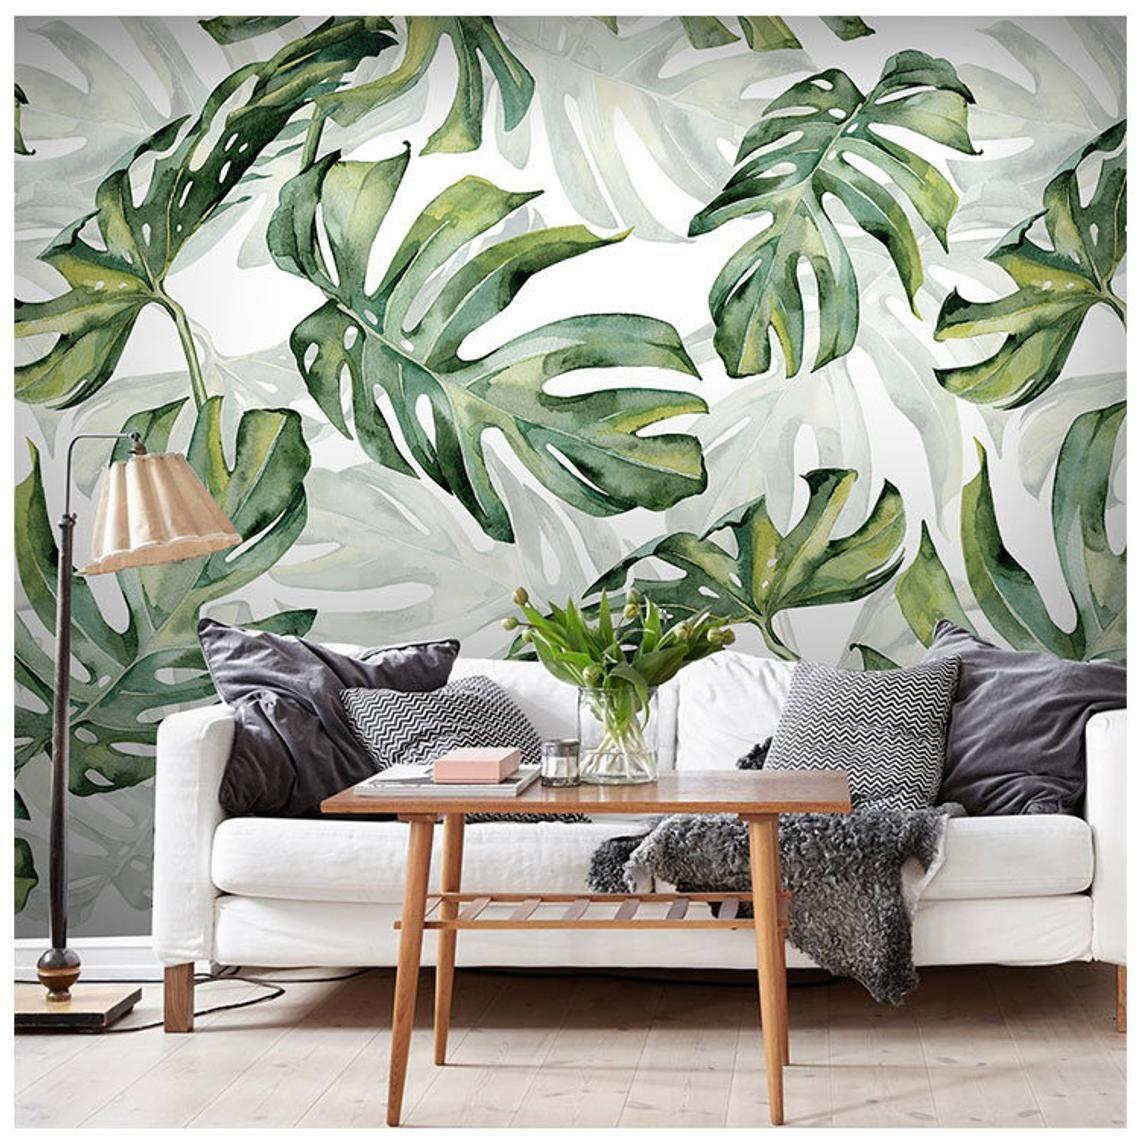 1140 x 1143 · jpeg - Rainforest Tropical Green Leaves Wallpaper Wall Murals | Etsy |  ...